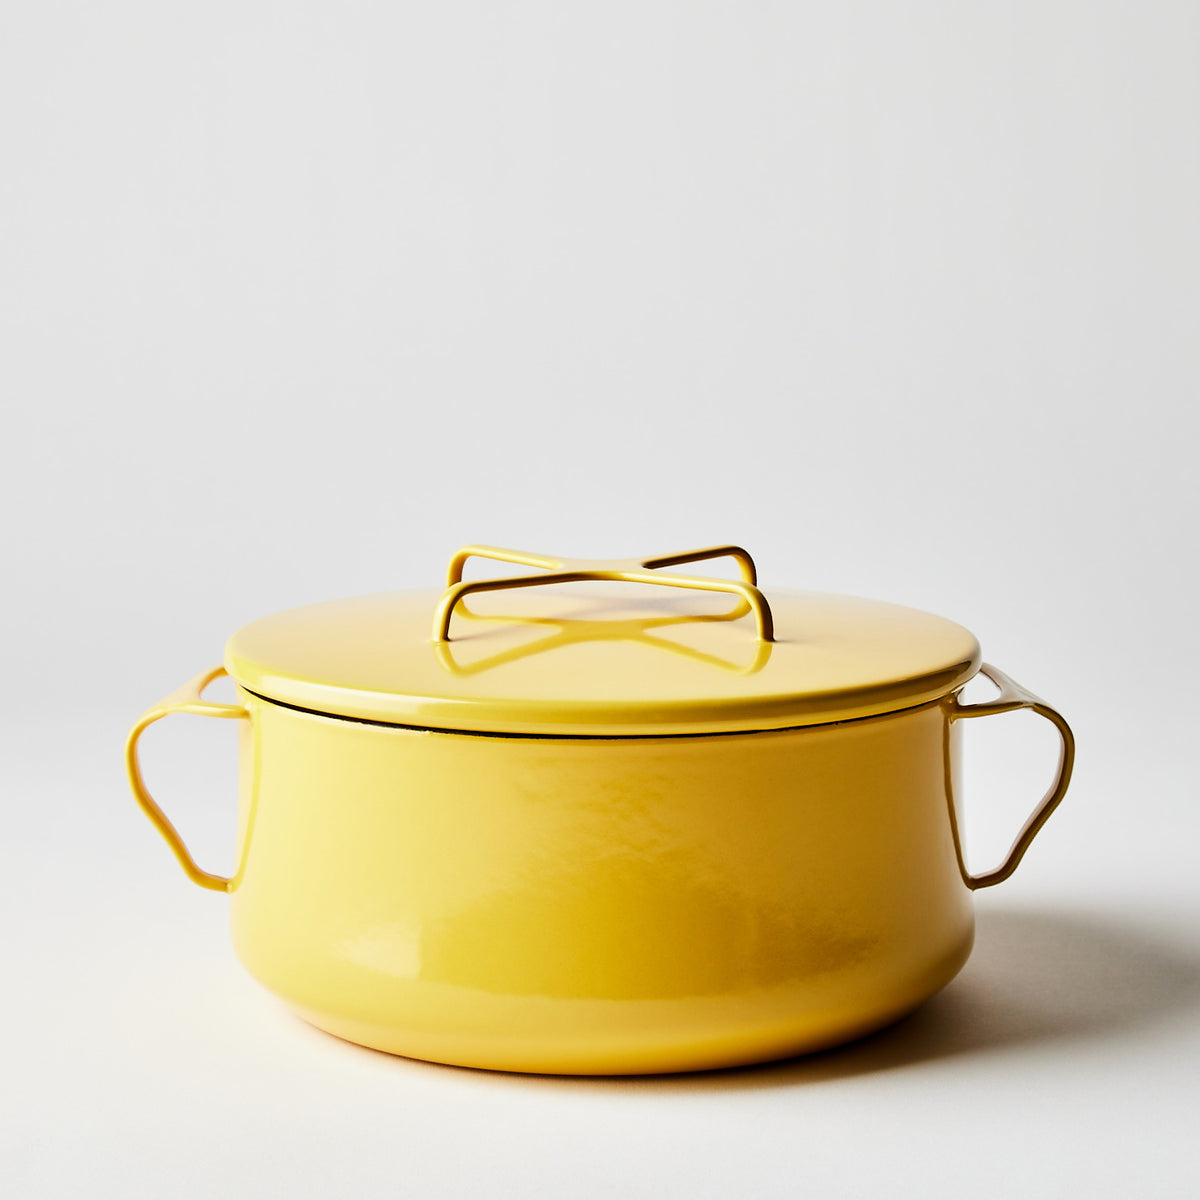 http://www.dansk.com/cdn/shop/products/2022-0308_dansk_kobenstyle-casserole-with-lid_yellow-4-qt_silo_ty-mecham_1200x1200.jpg?v=1654830886